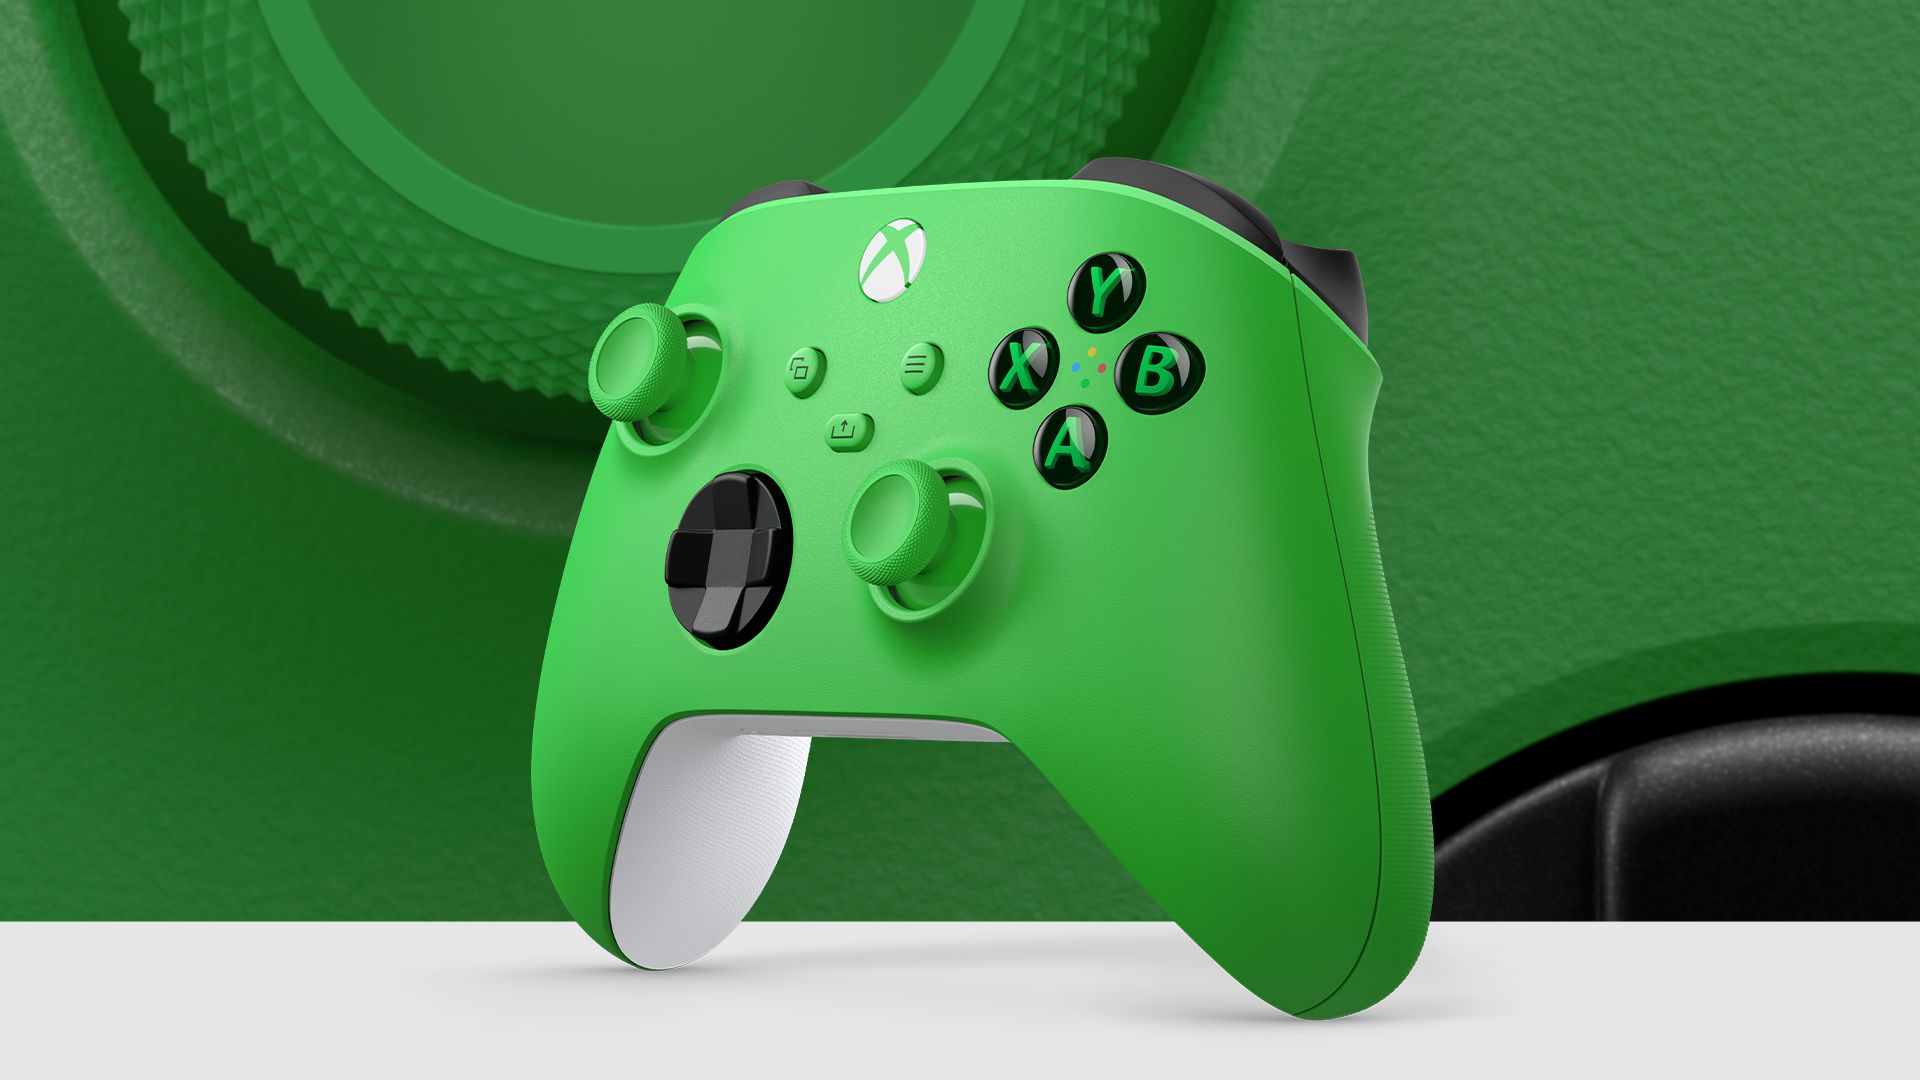 Harritu lehiaketa Xbox Haririk gabeko kontrolagailu berriarekin - Velocity Green - Xbox Wire